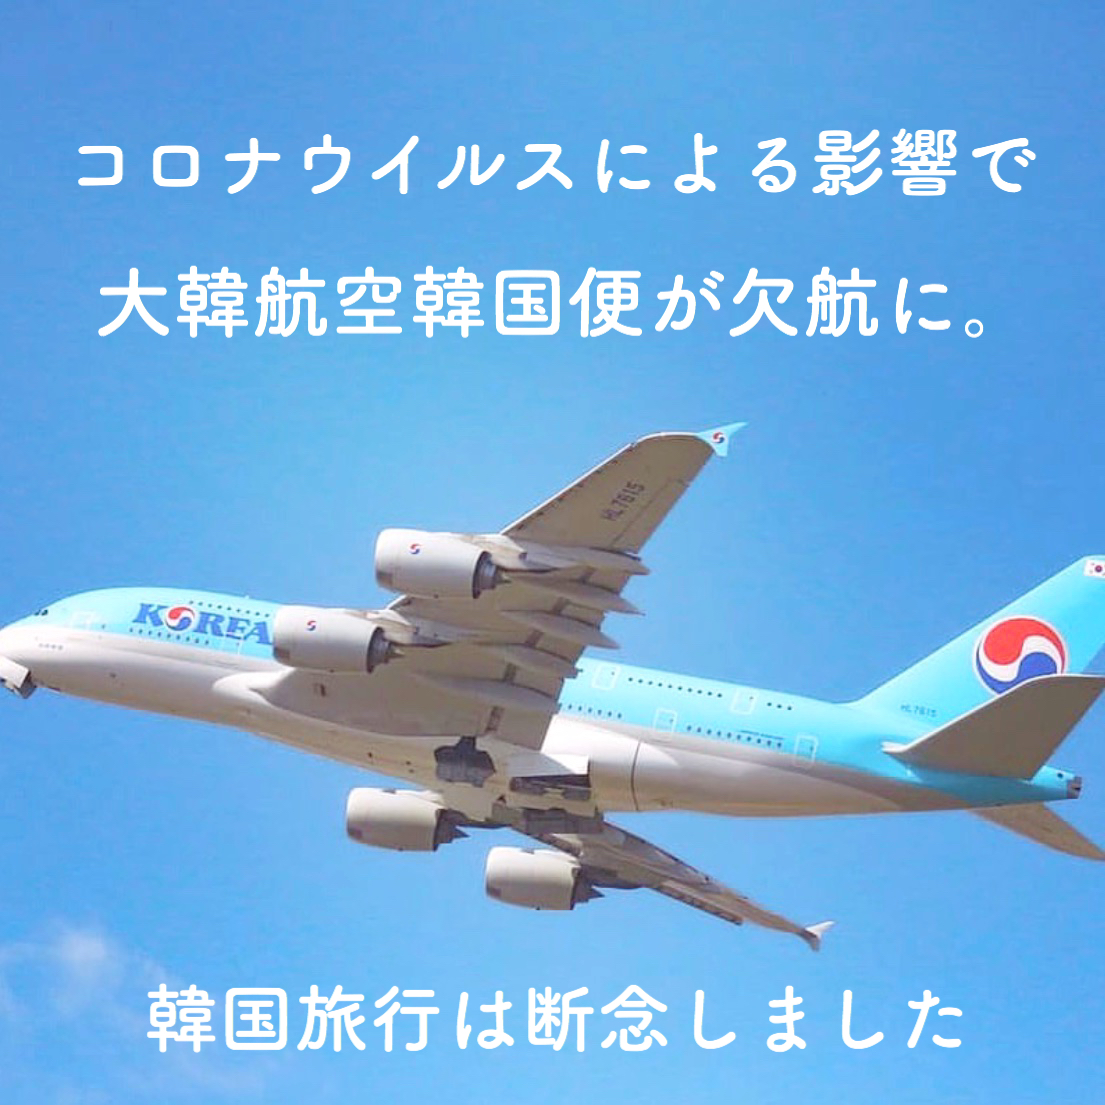 【韓国コロナ情報】コロナウイルスの影響で大韓航空欠航 韓国旅行キャンセル